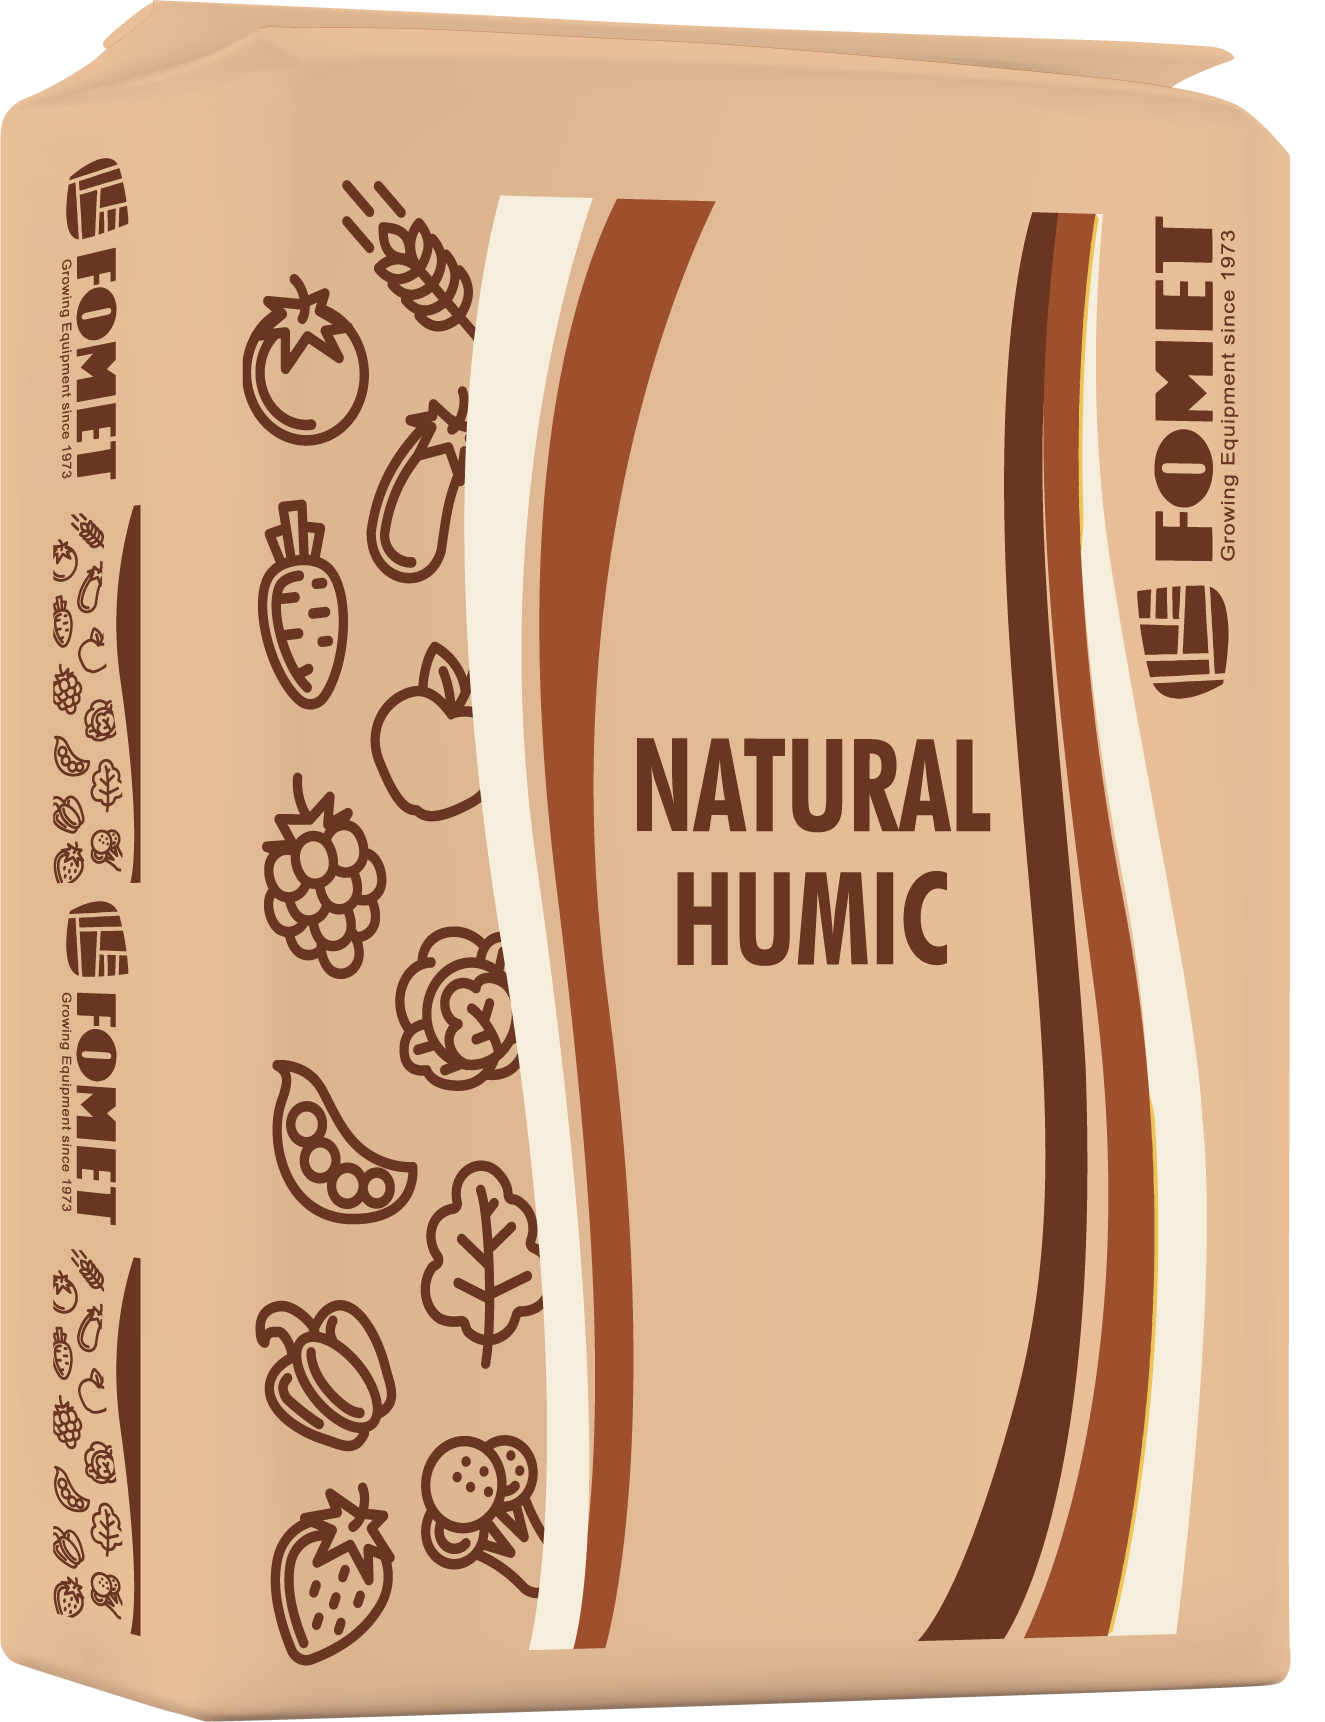 natural humic